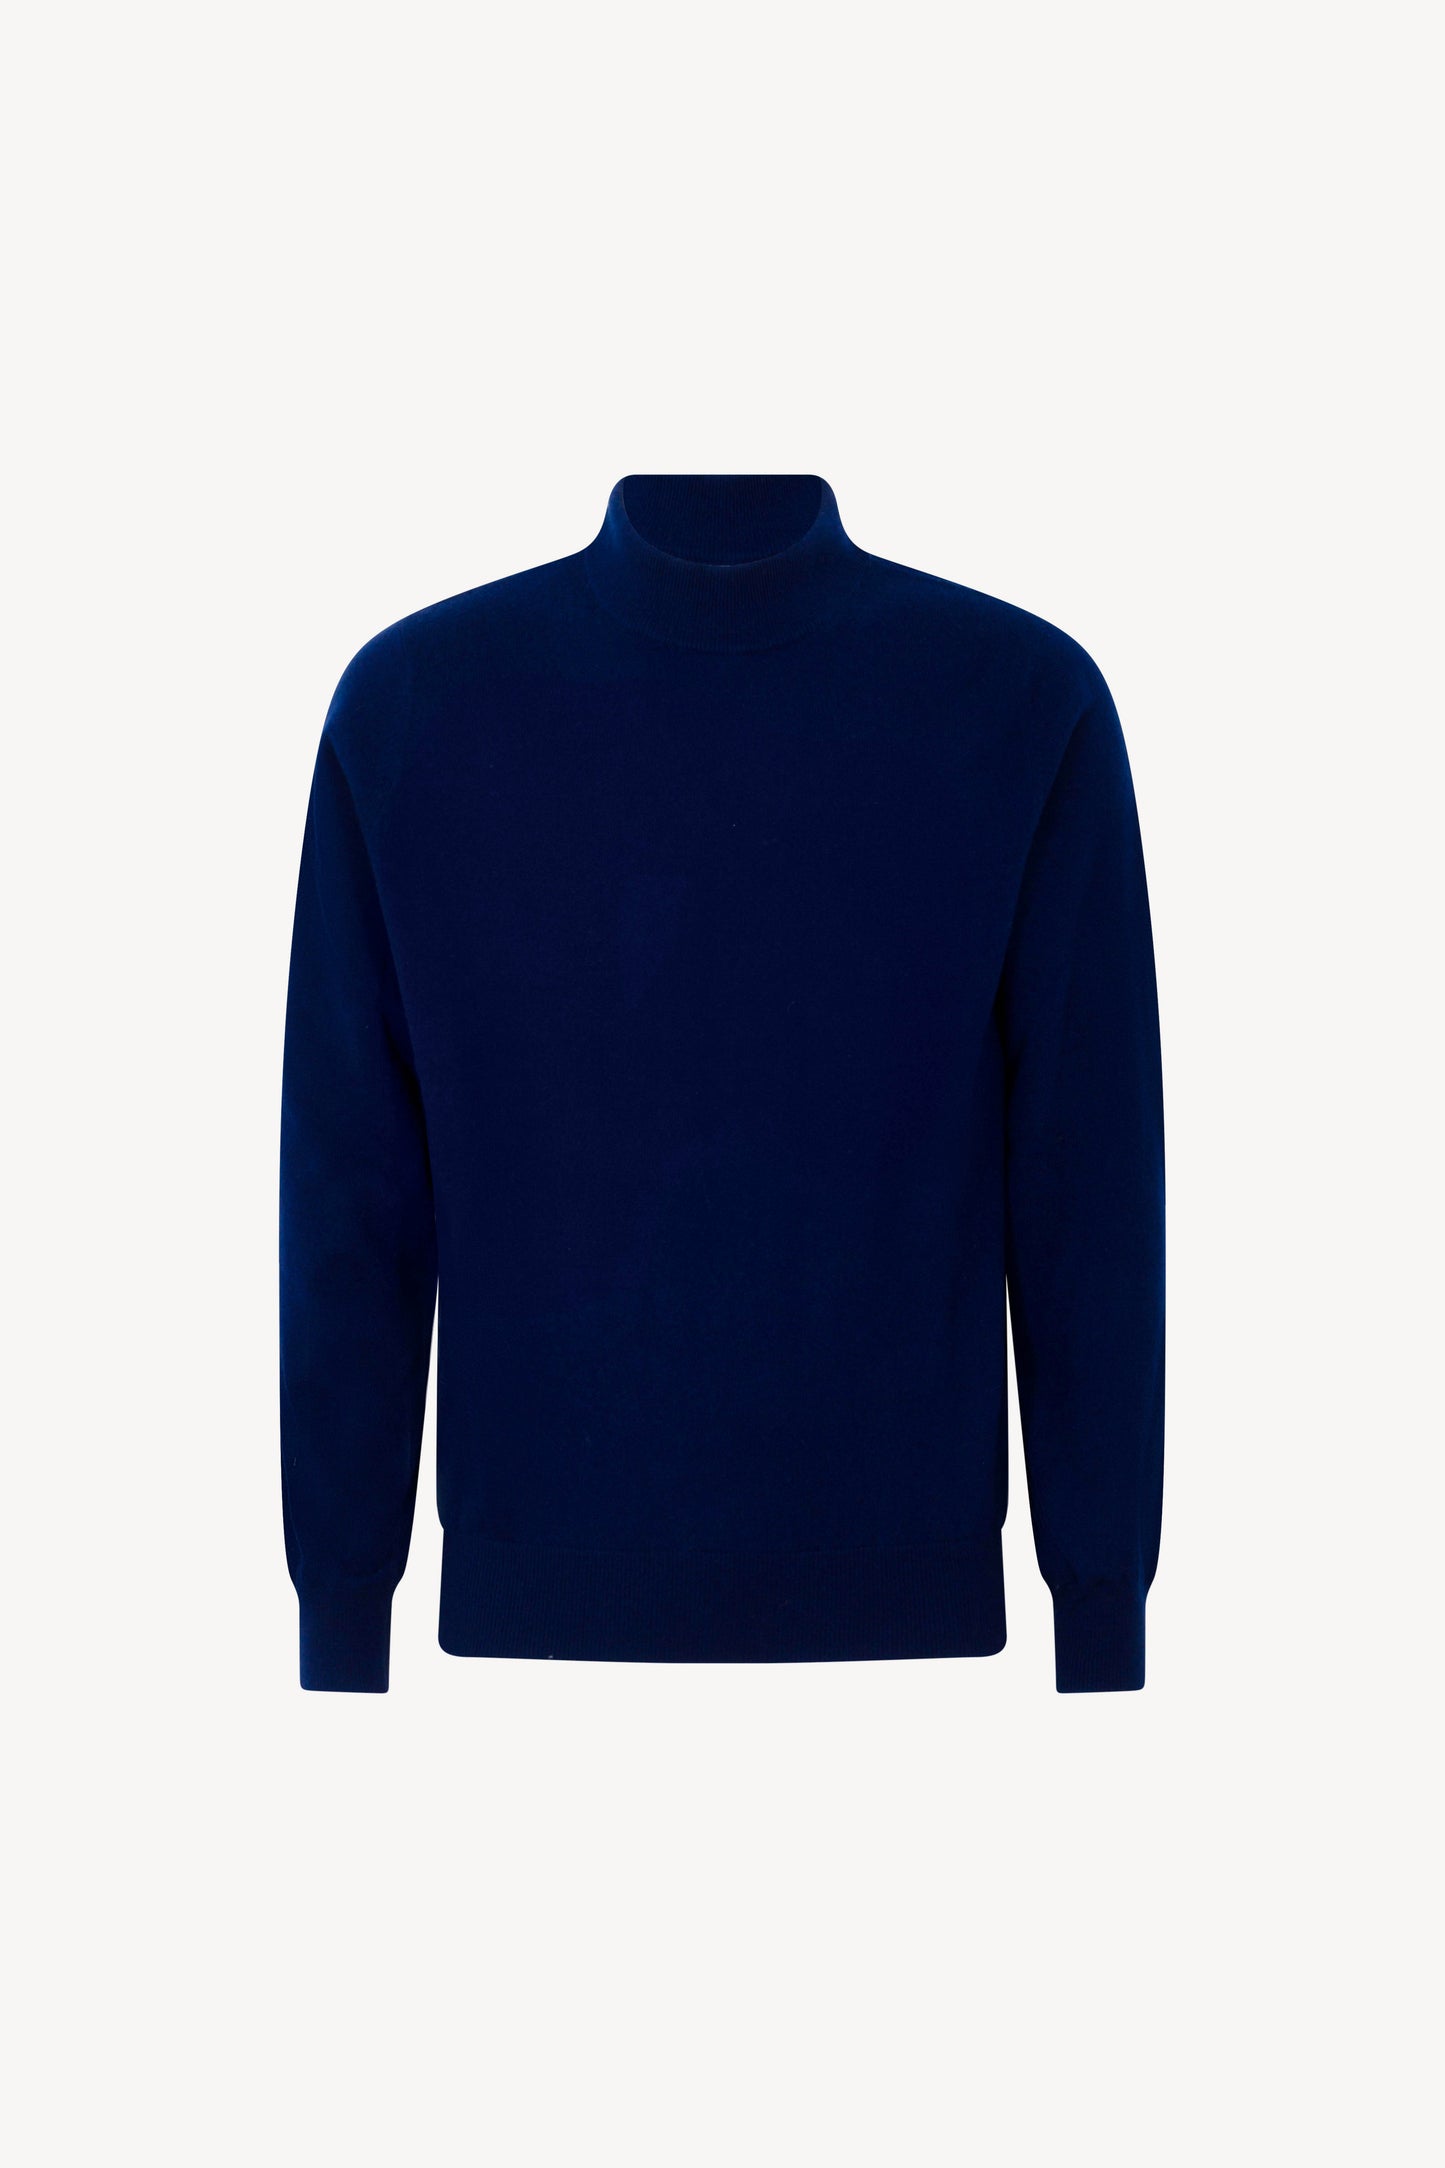 Pure Cashmere Turtleneck Sweater